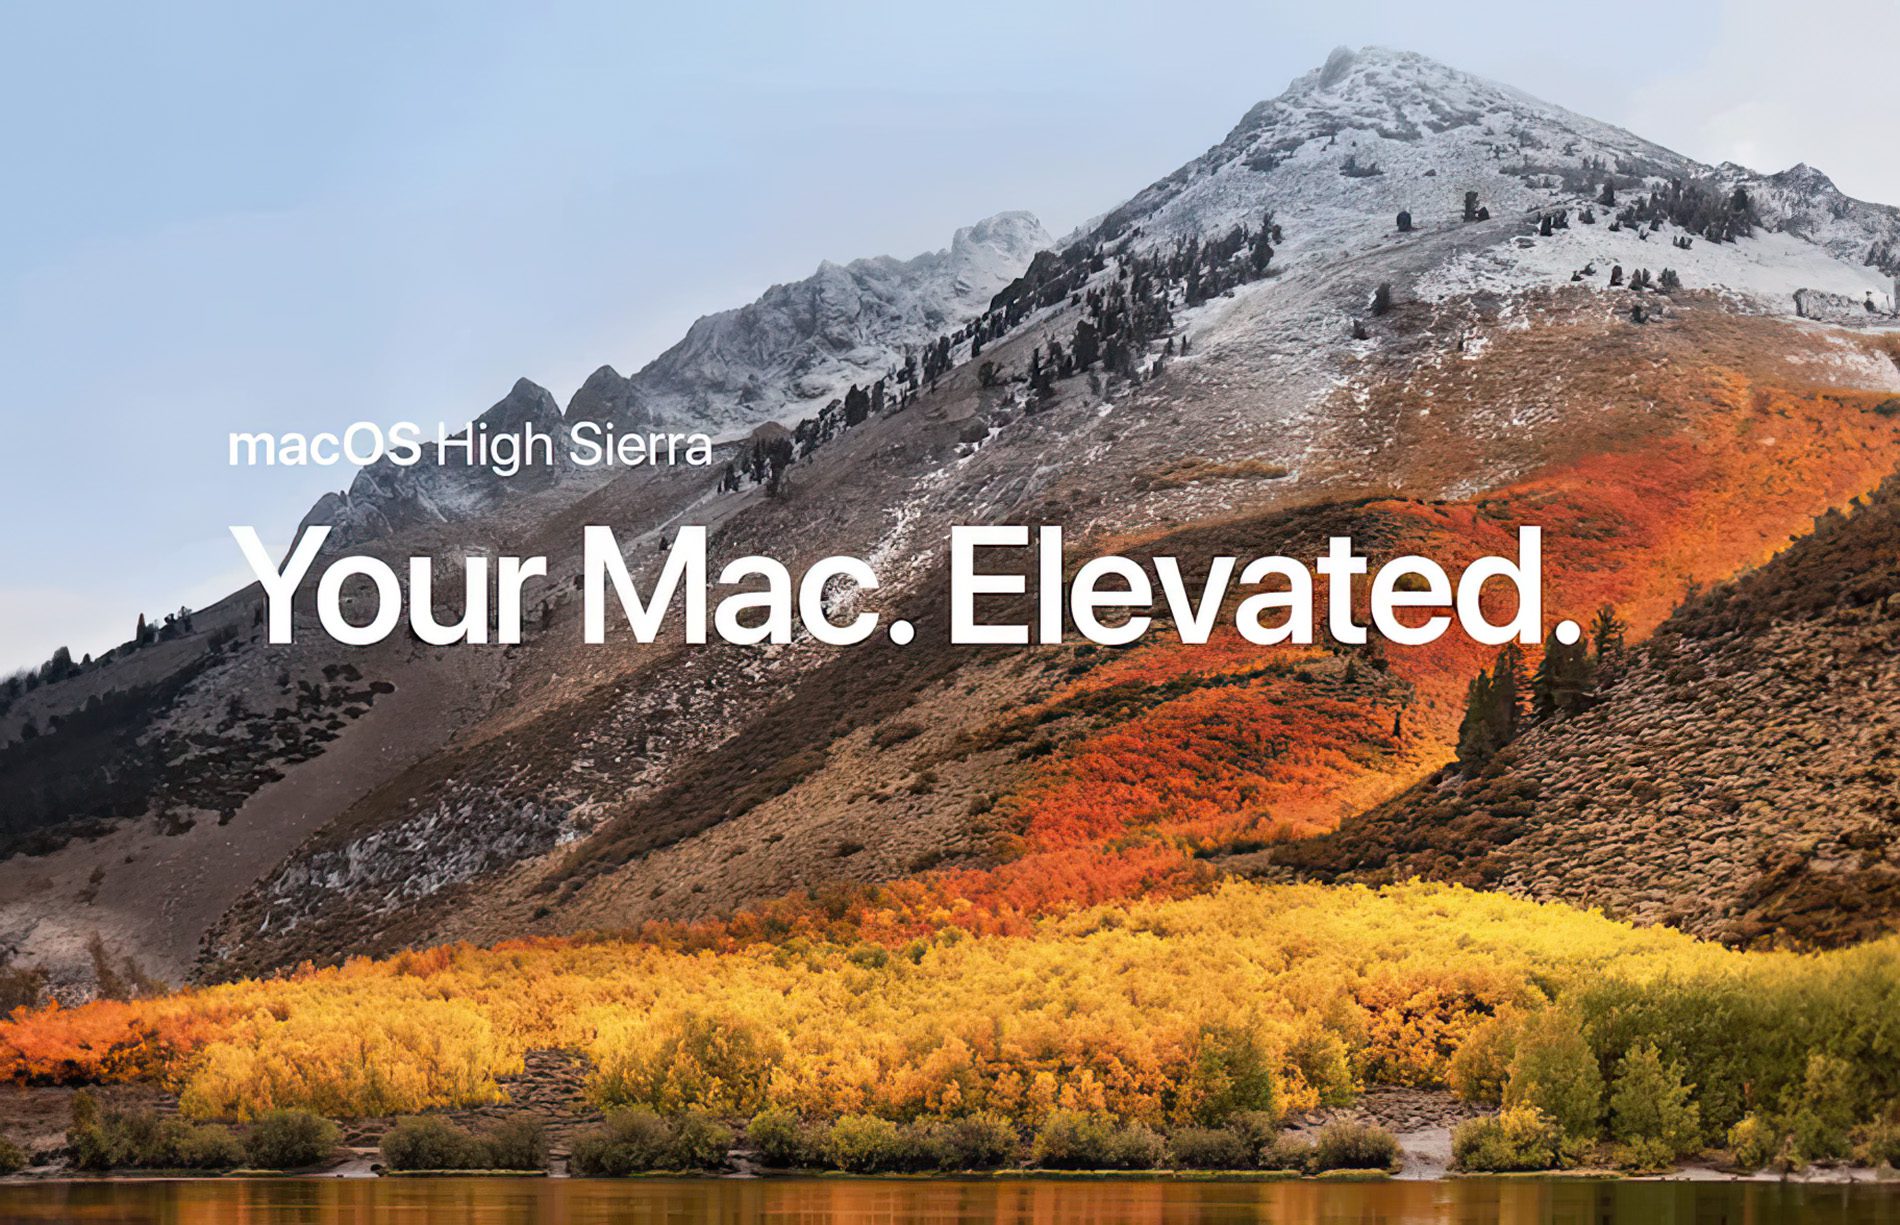 macOS High Sierra ist mehr ein Bugfix als ein Feature-Update zu macOS Sierra.